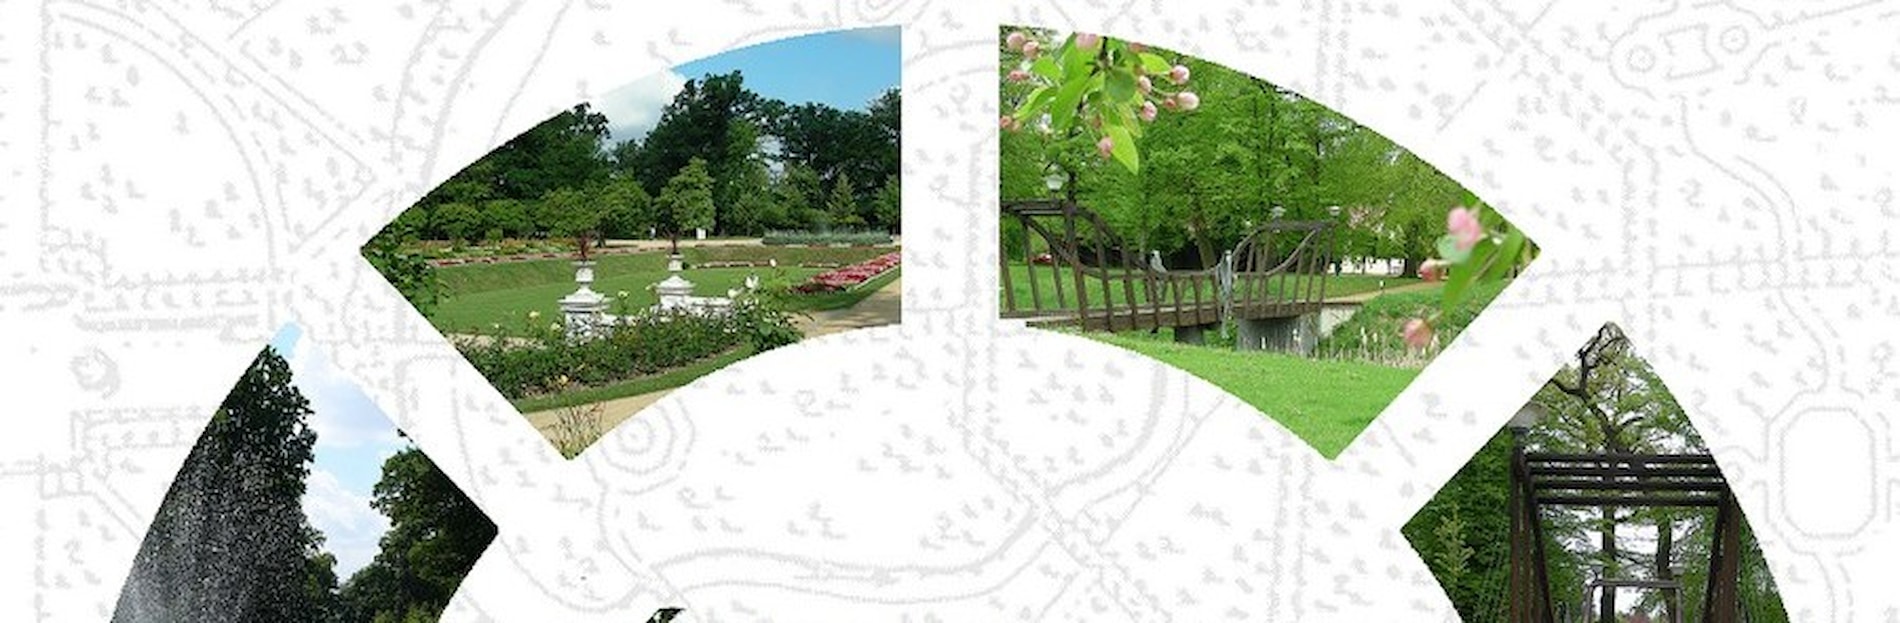 Víkend otevřených zahrad – park Michalov